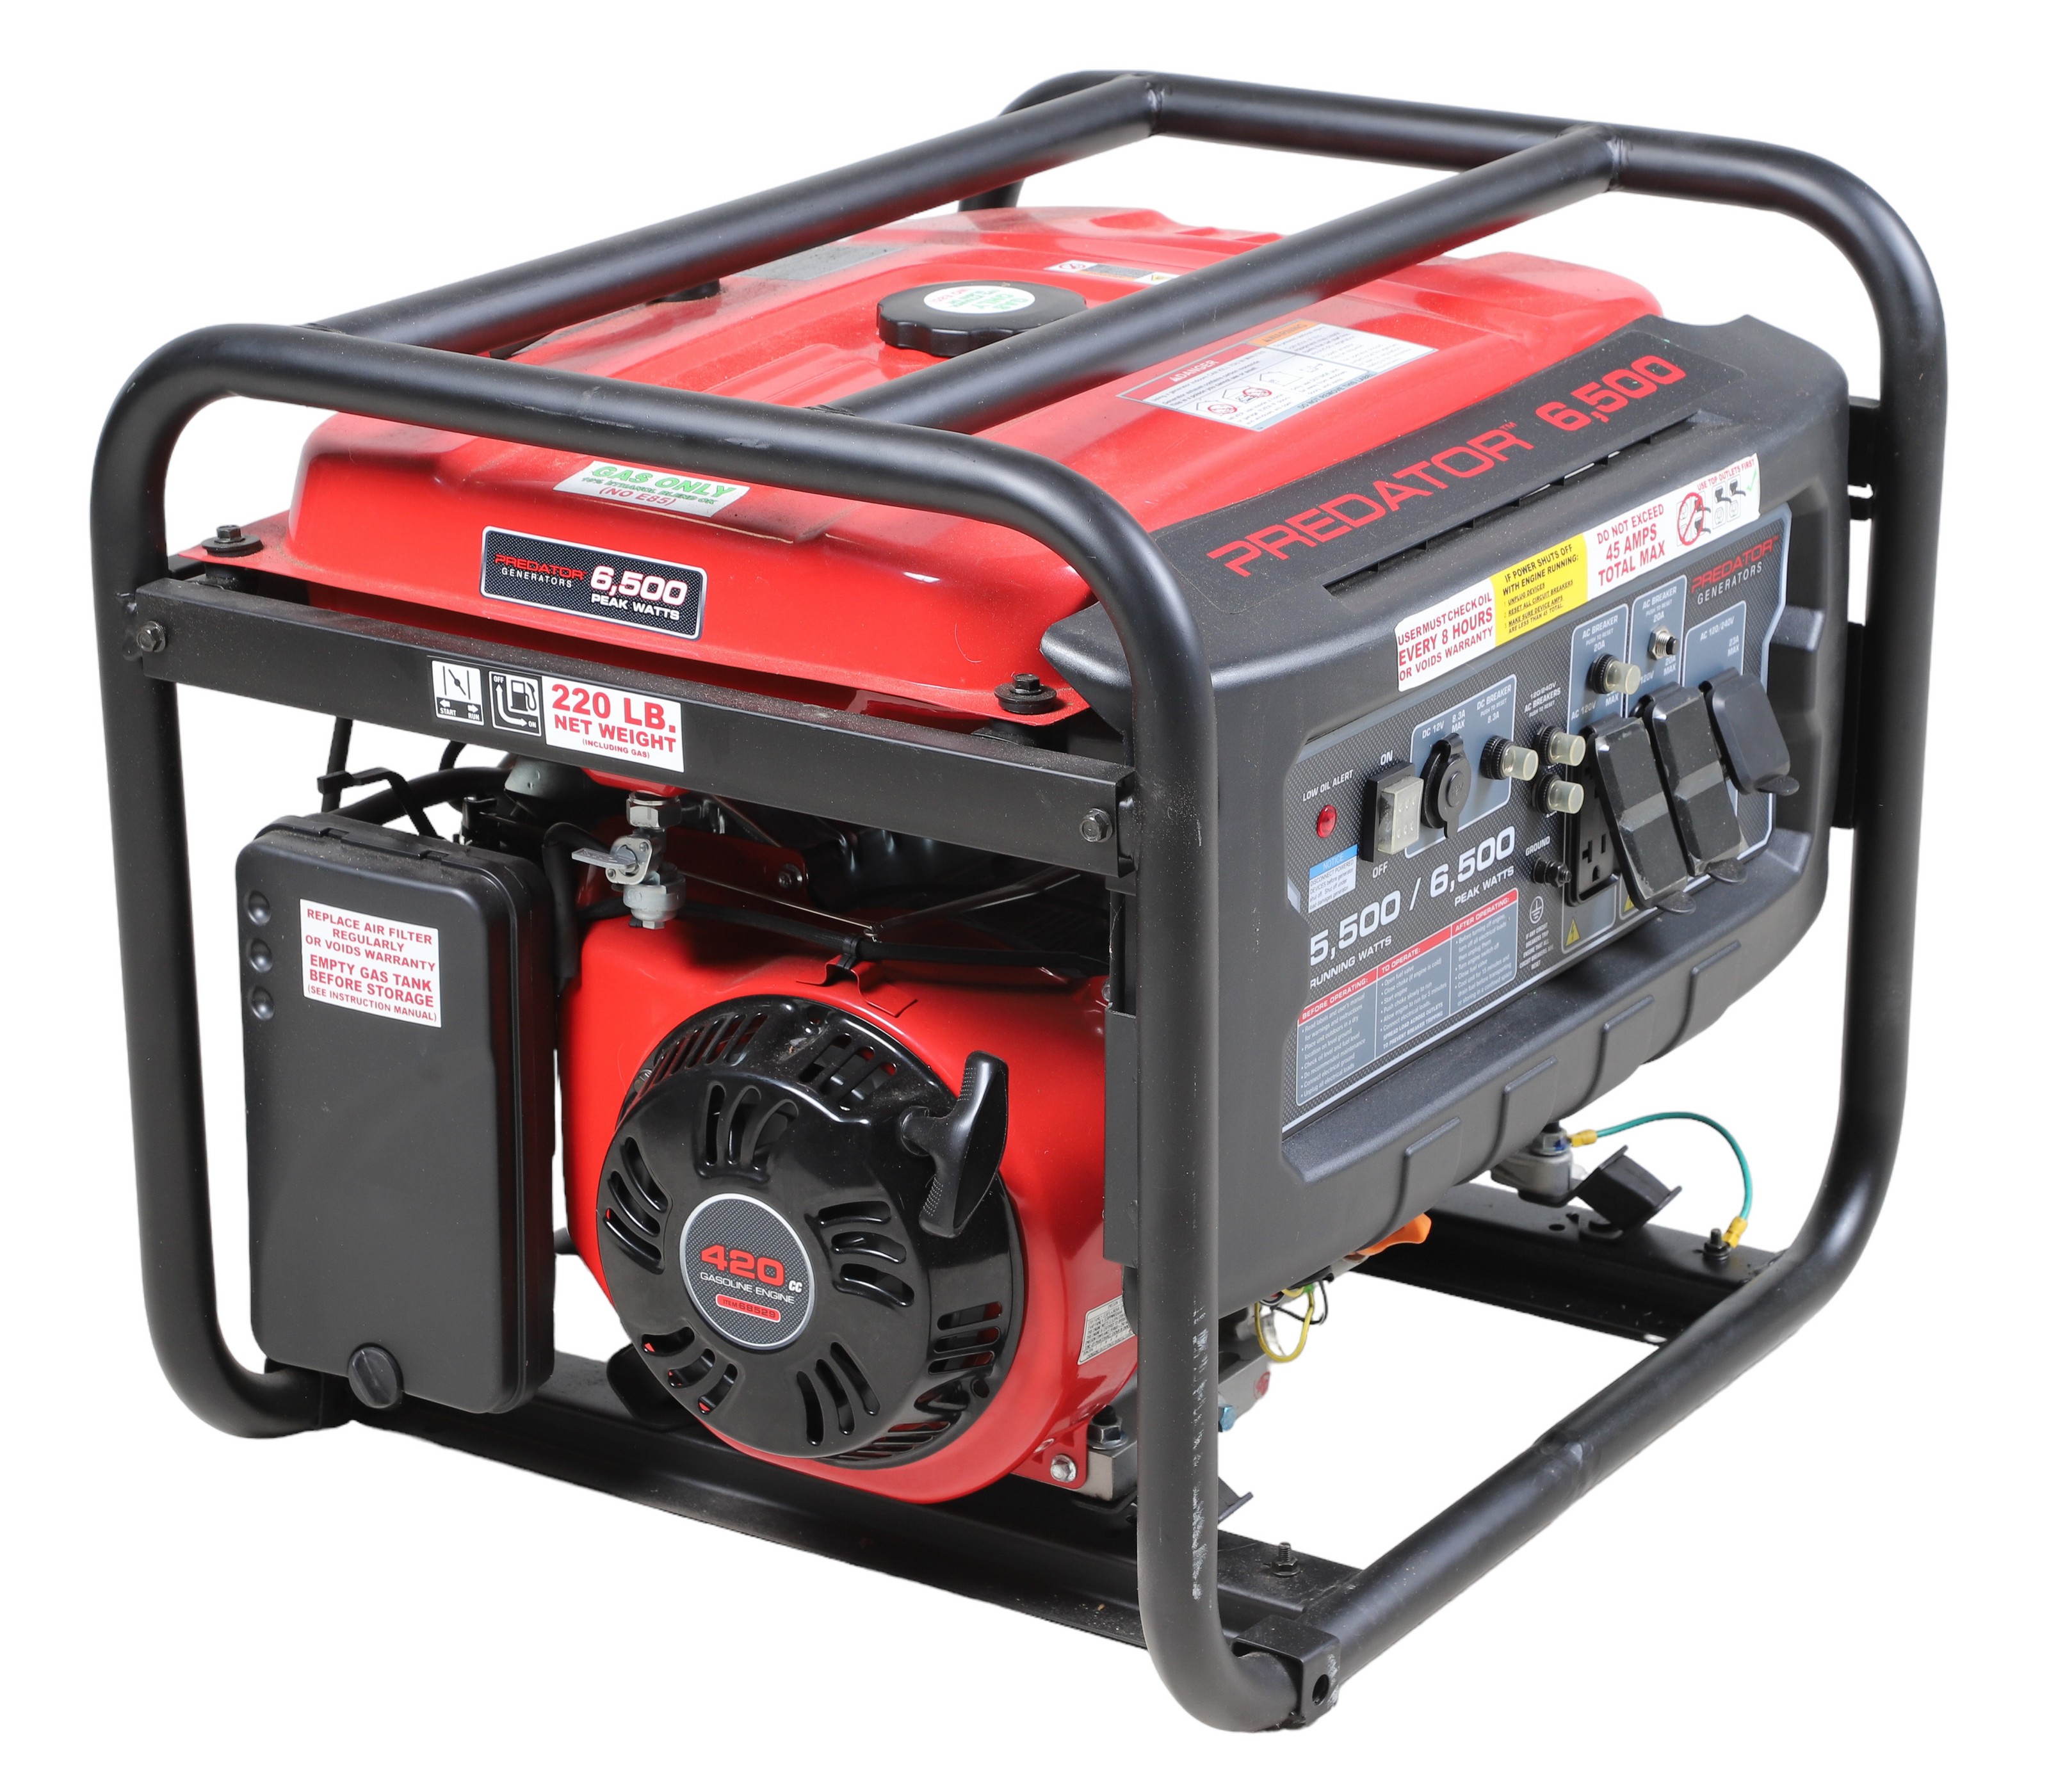 Predatro 6500 Gas powered generator,